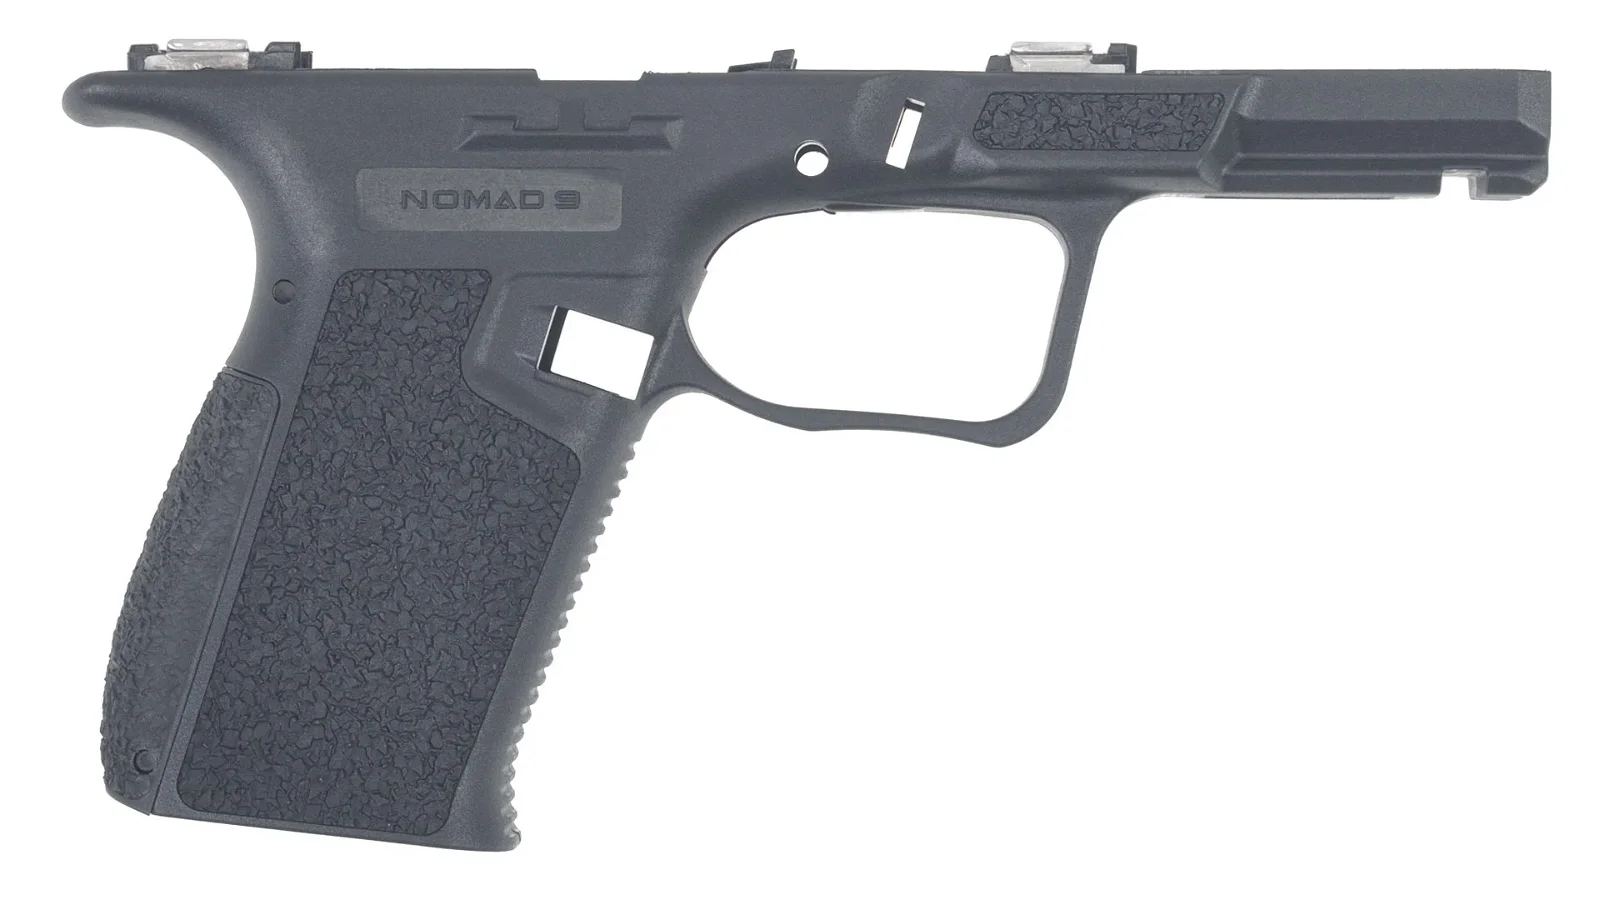 Nomad 9 Enhanced Frame For Glock 19 Gen 5 - Black